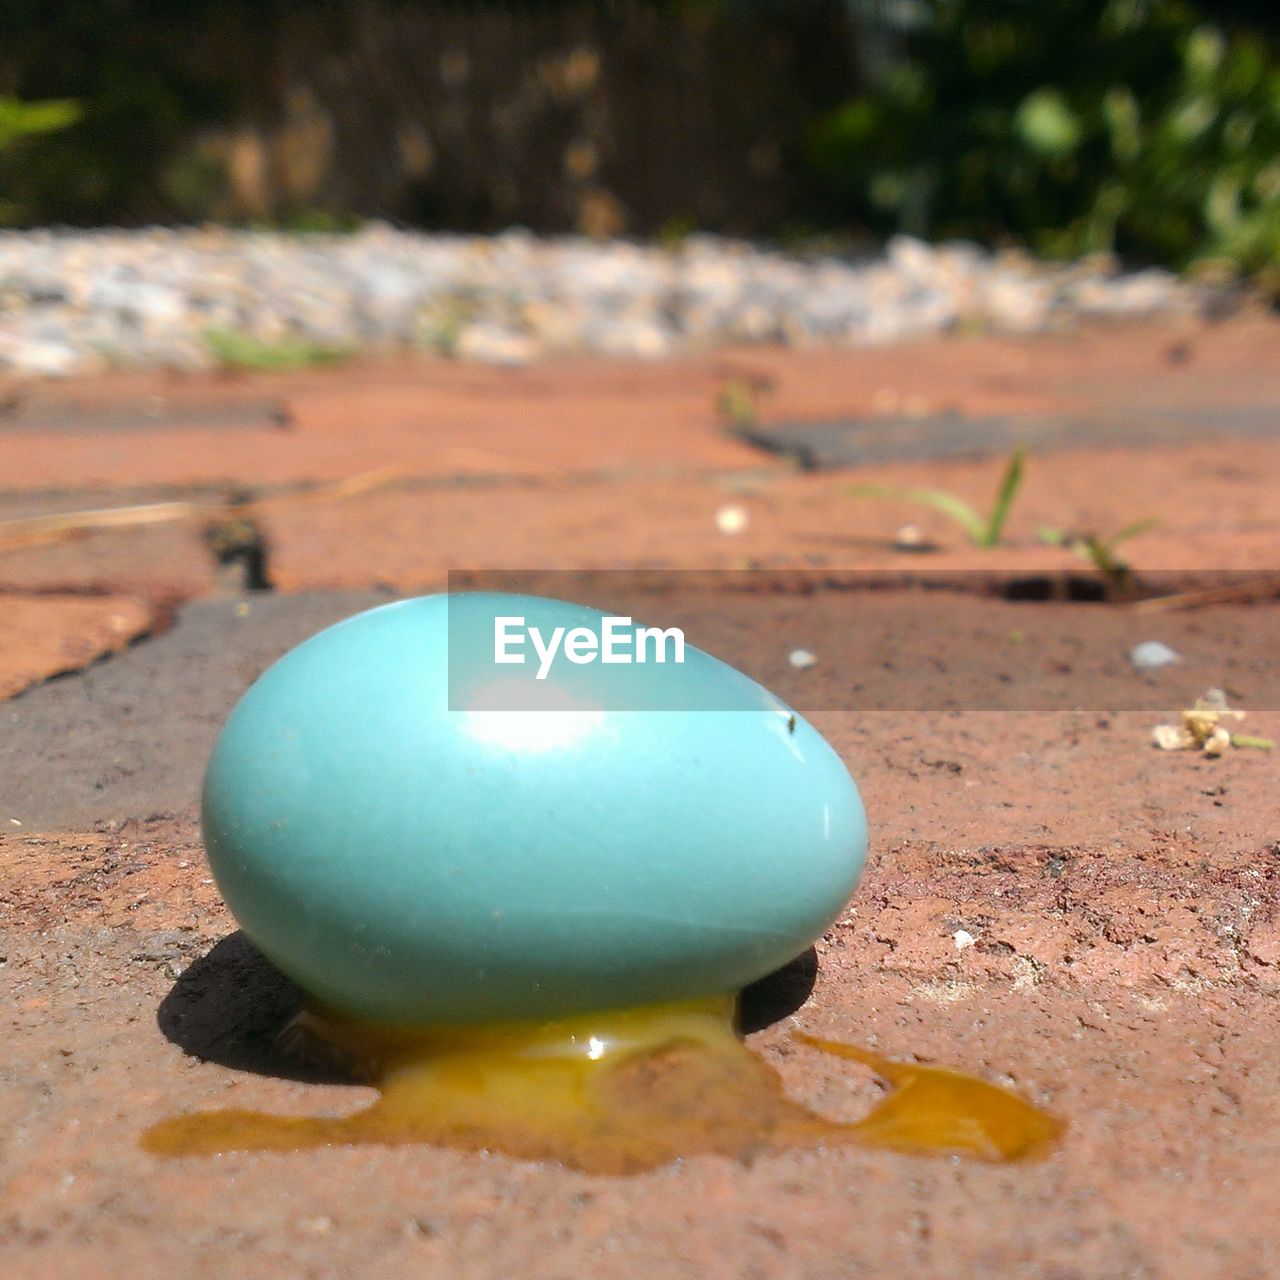 Blue egg crashed on the floor